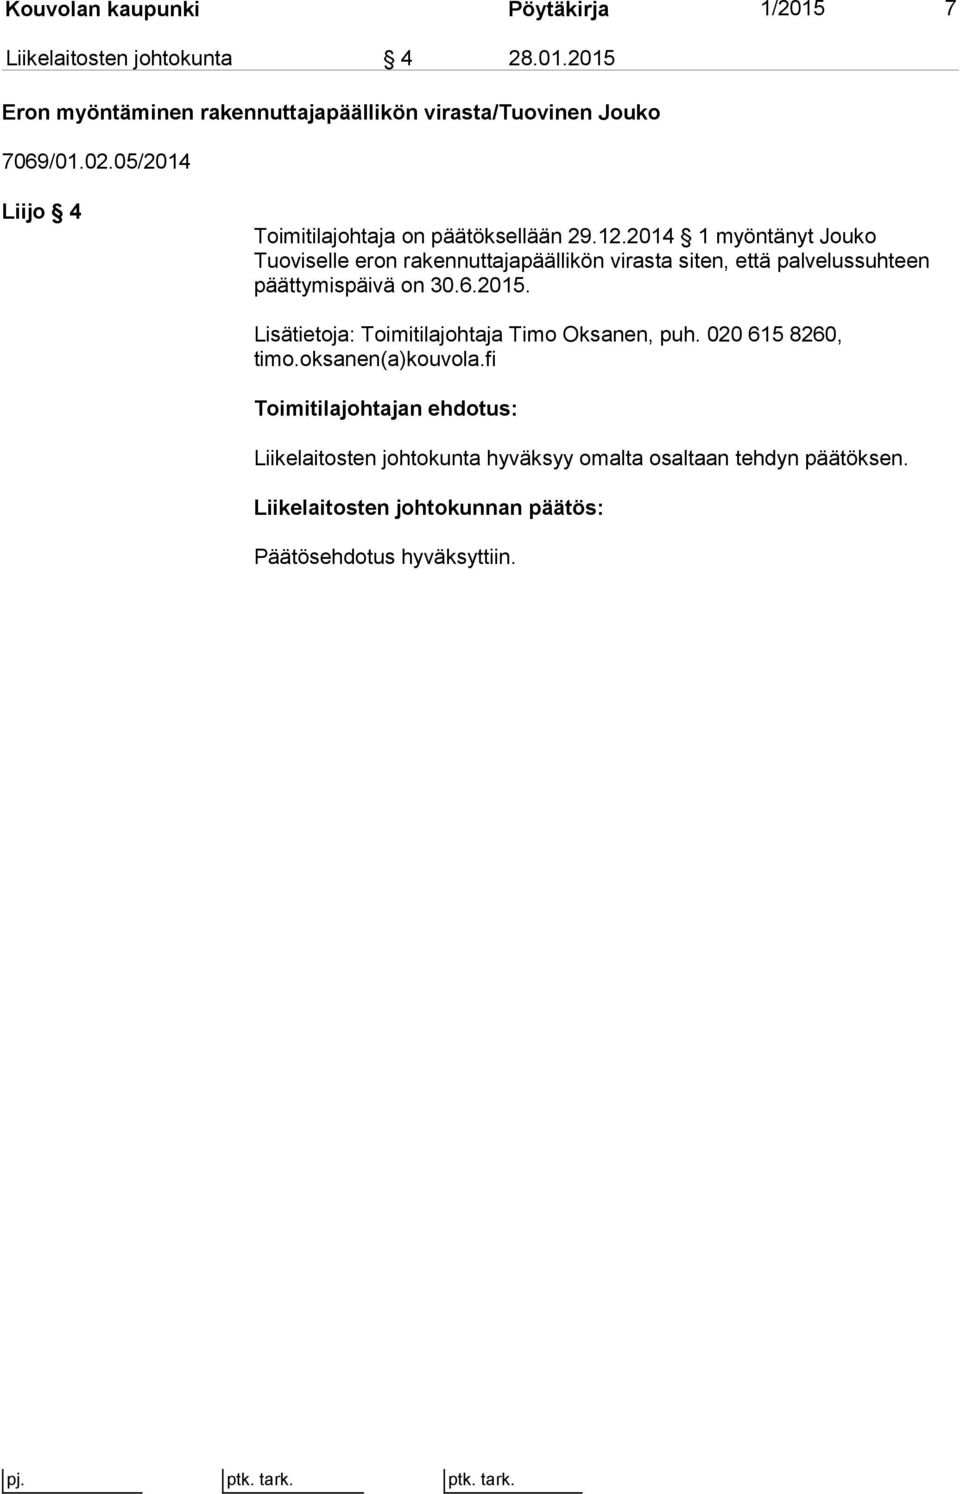 2014 1 myöntänyt Jouko Tuoviselle eron rakennuttajapäällikön virasta siten, että palvelussuhteen päättymispäivä on 30.6.2015.